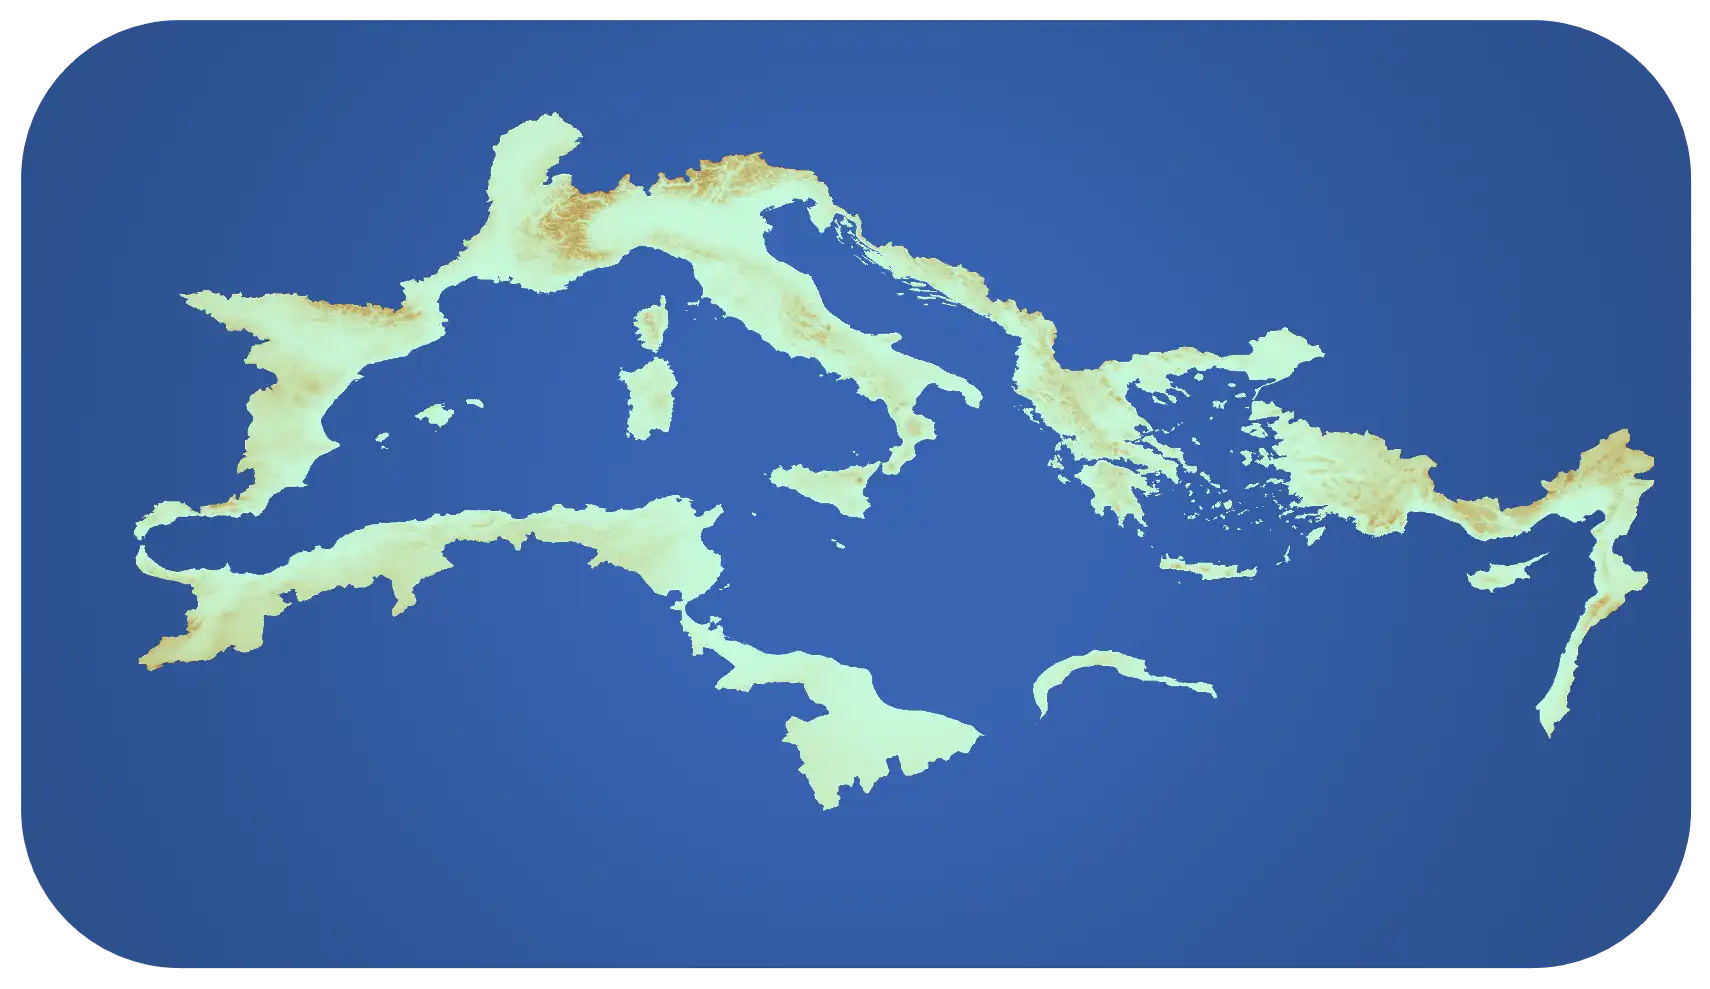 4DMED-Hydrology - Mediterranean sea